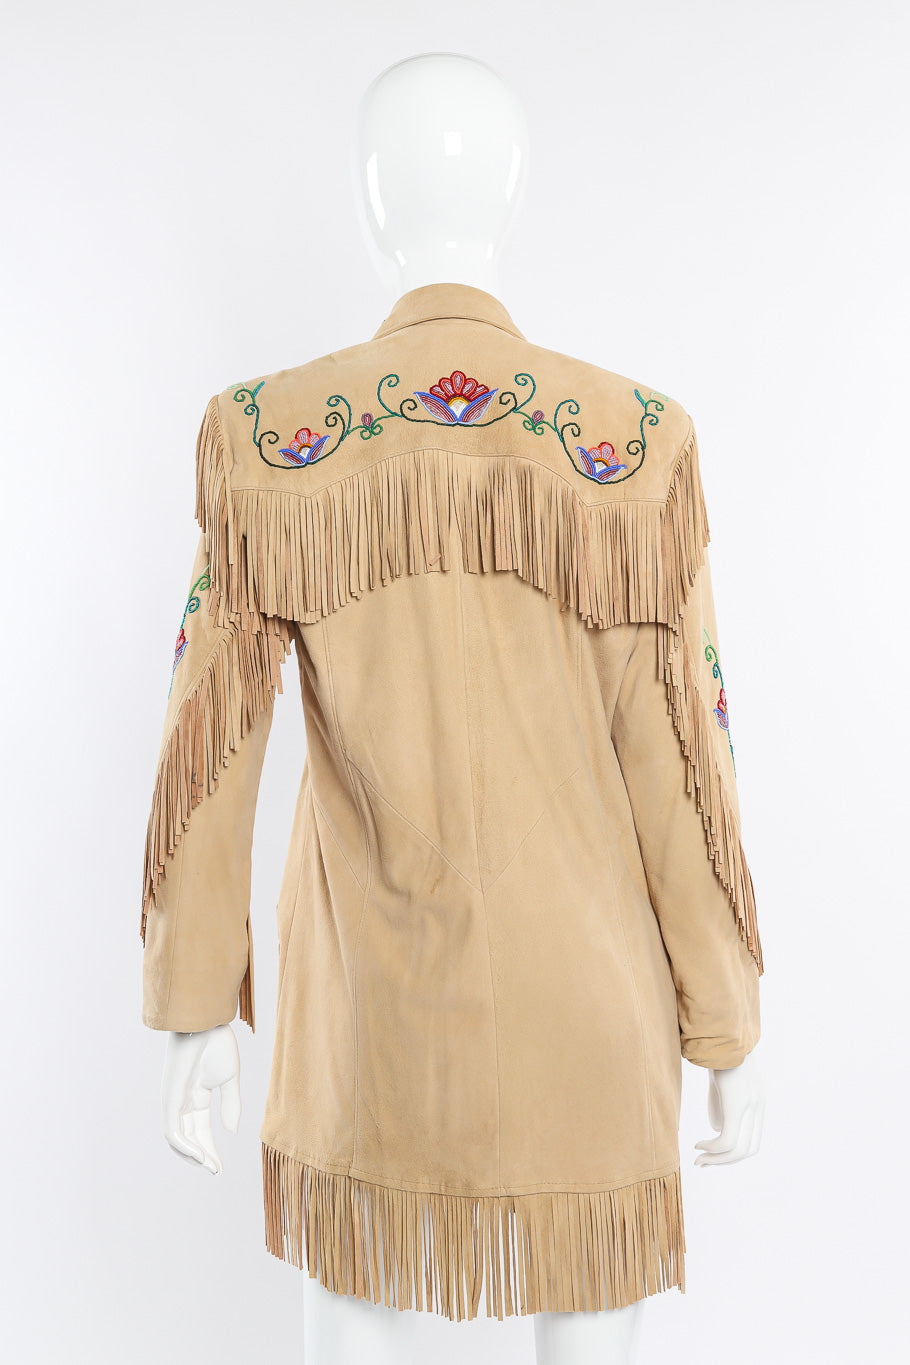 Vintage Char suede fringe jacket back view on mannequin @Recessla